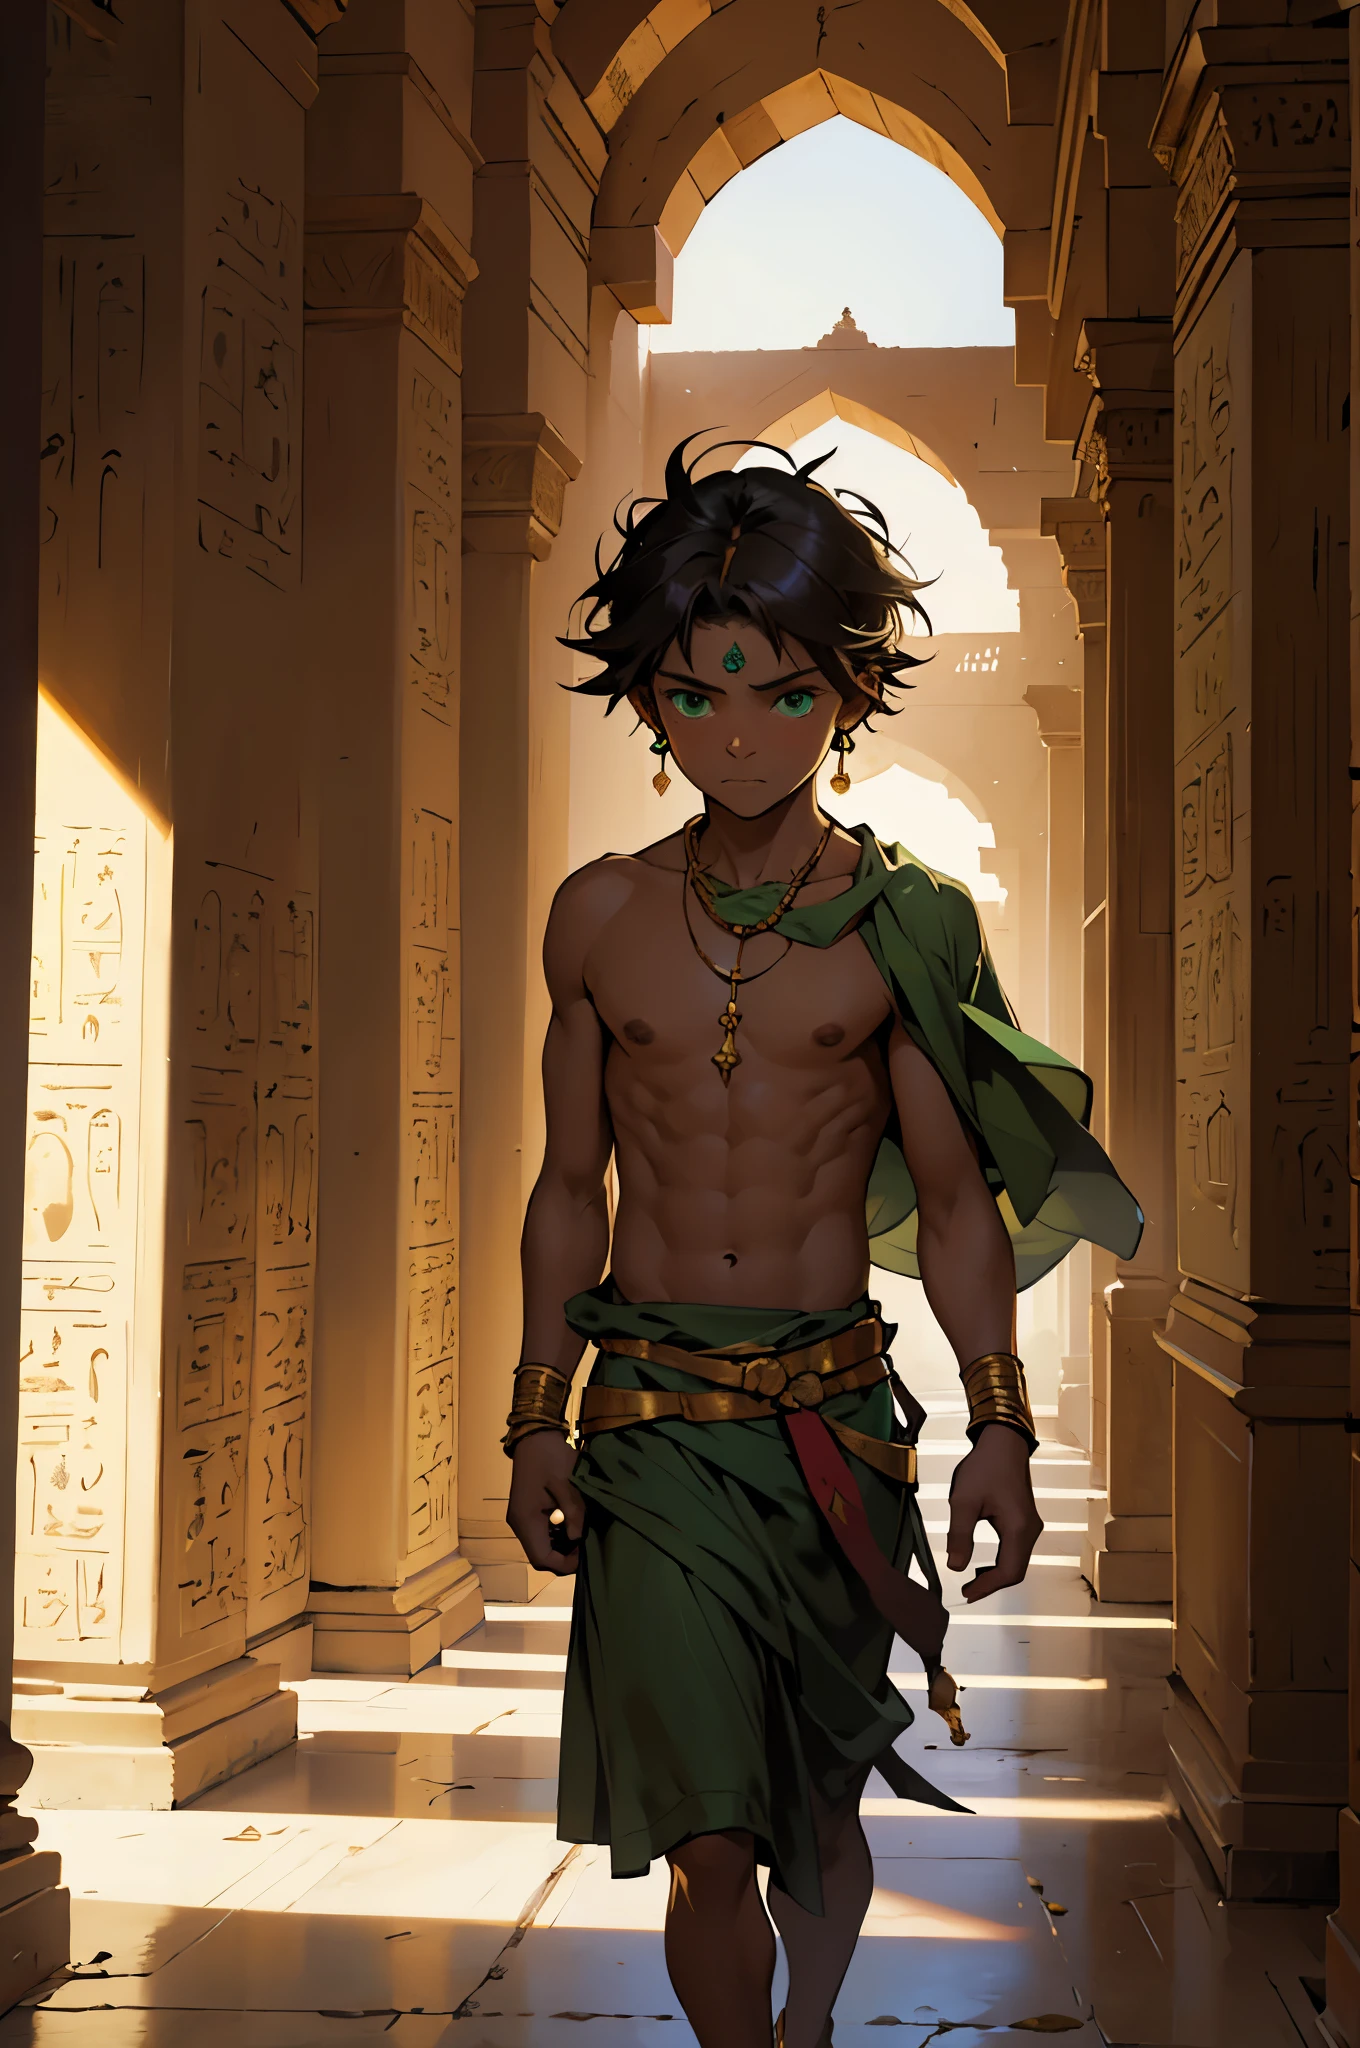 고대부터 호화로운 아랍 궁전의 홀과 복도가 있고 그 홀에는 5살짜리 노숙자 소년이 있습니다., 버려진, 가난한, 배고픈, 그 사람은 아주 녹색 눈을 갖고 있어, 그는 고대 이집트 치마를 입고 셔츠를 입지 않았다., 